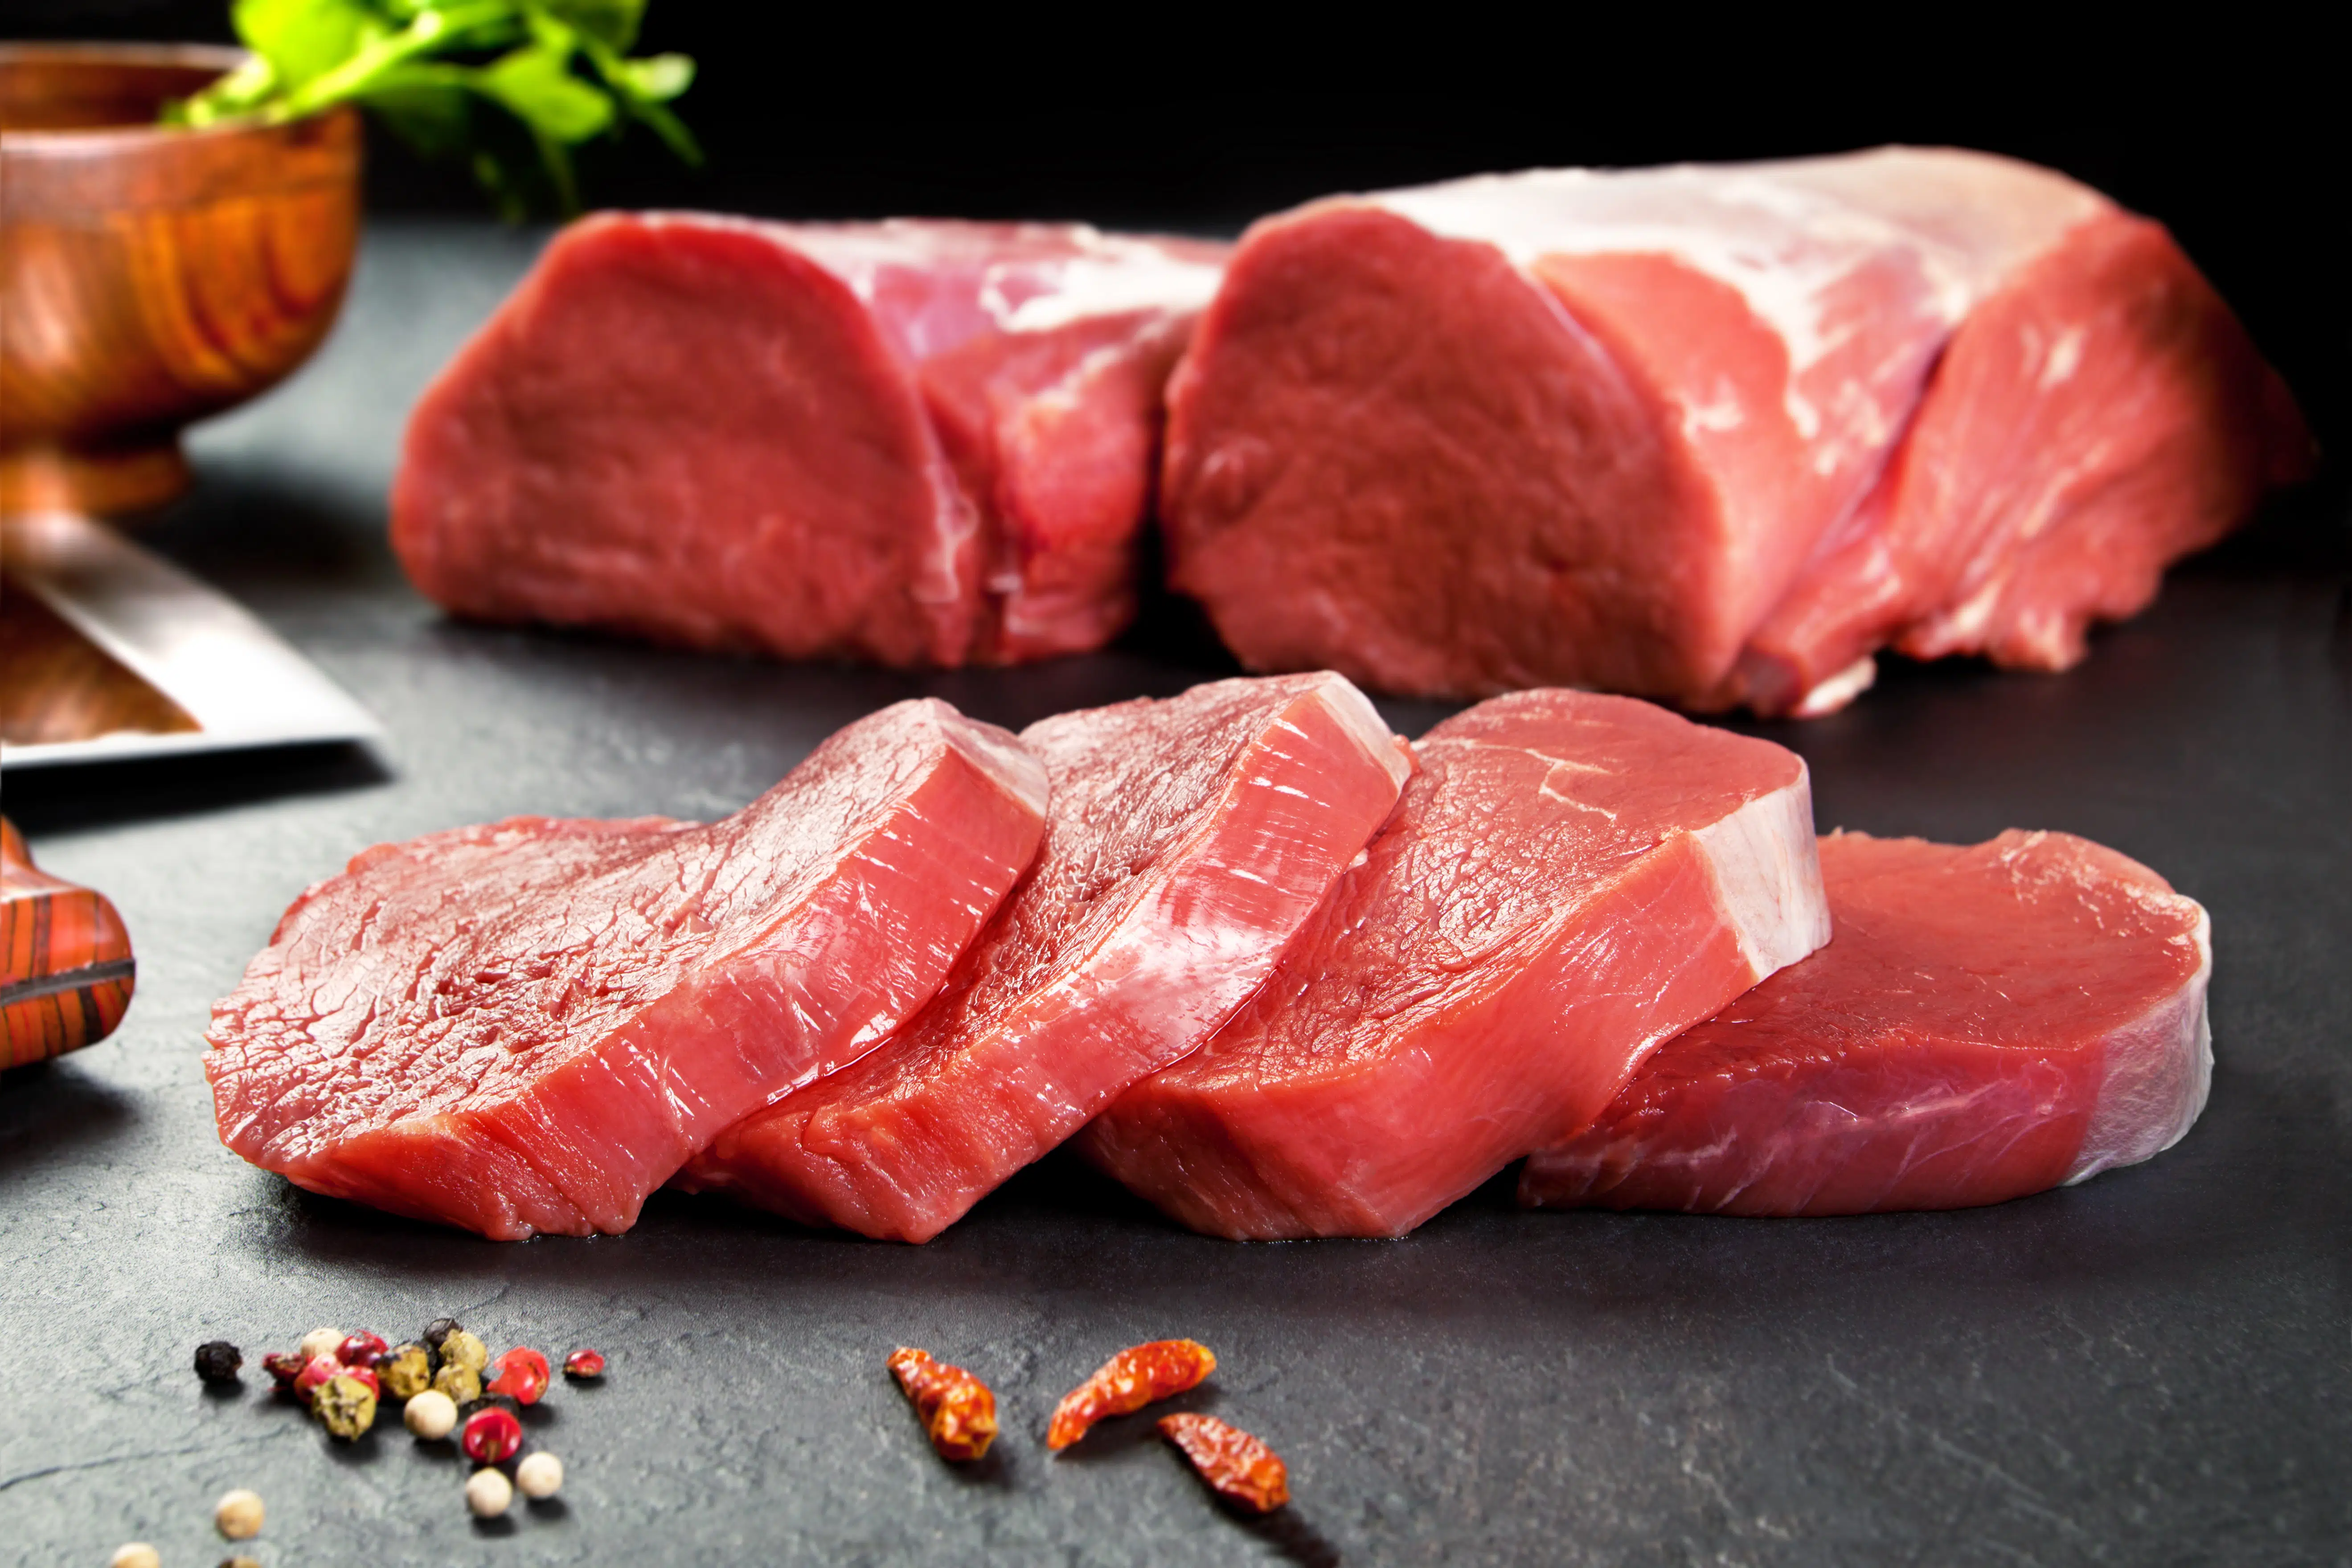 Moela de frango é barata e boa substituta da carne bovina; veja benefícios  - 26/05/2022 - UOL VivaBem